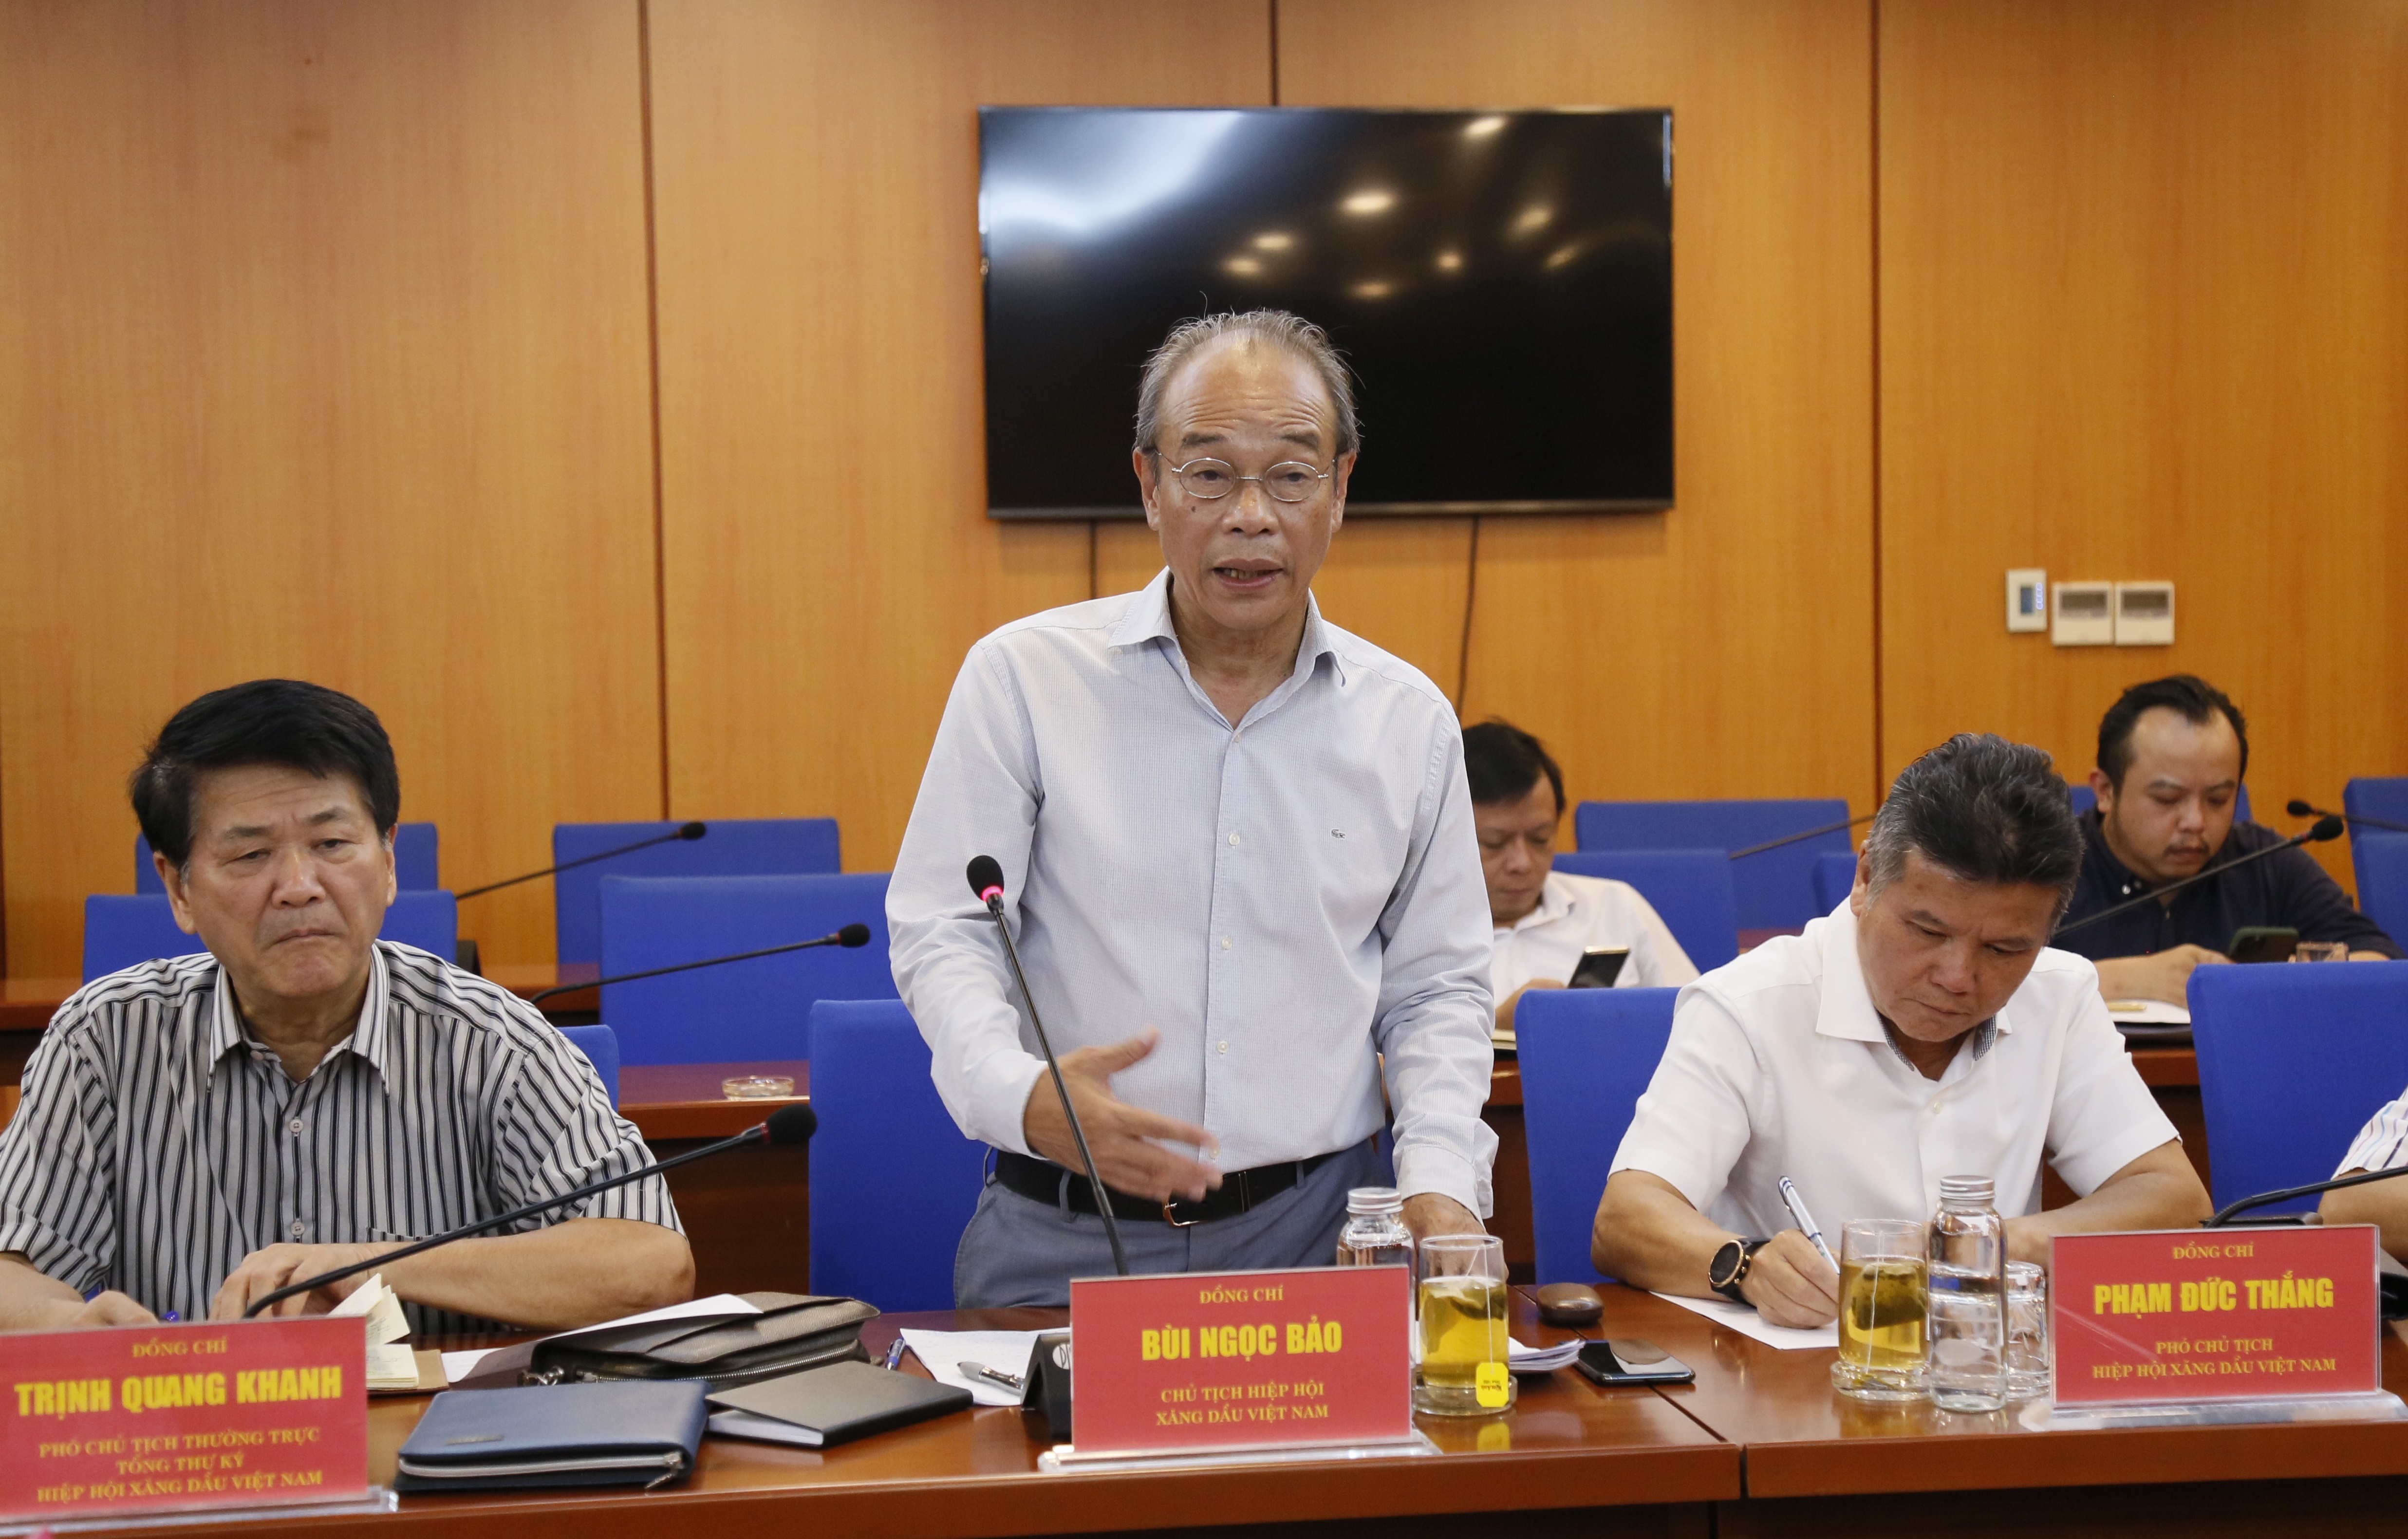 Chủ tịch Hiệp hội Xăng dầu Việt Nam Bùi Ngọc Bảo nêu các kiến nghị tới Bộ Tài chính.